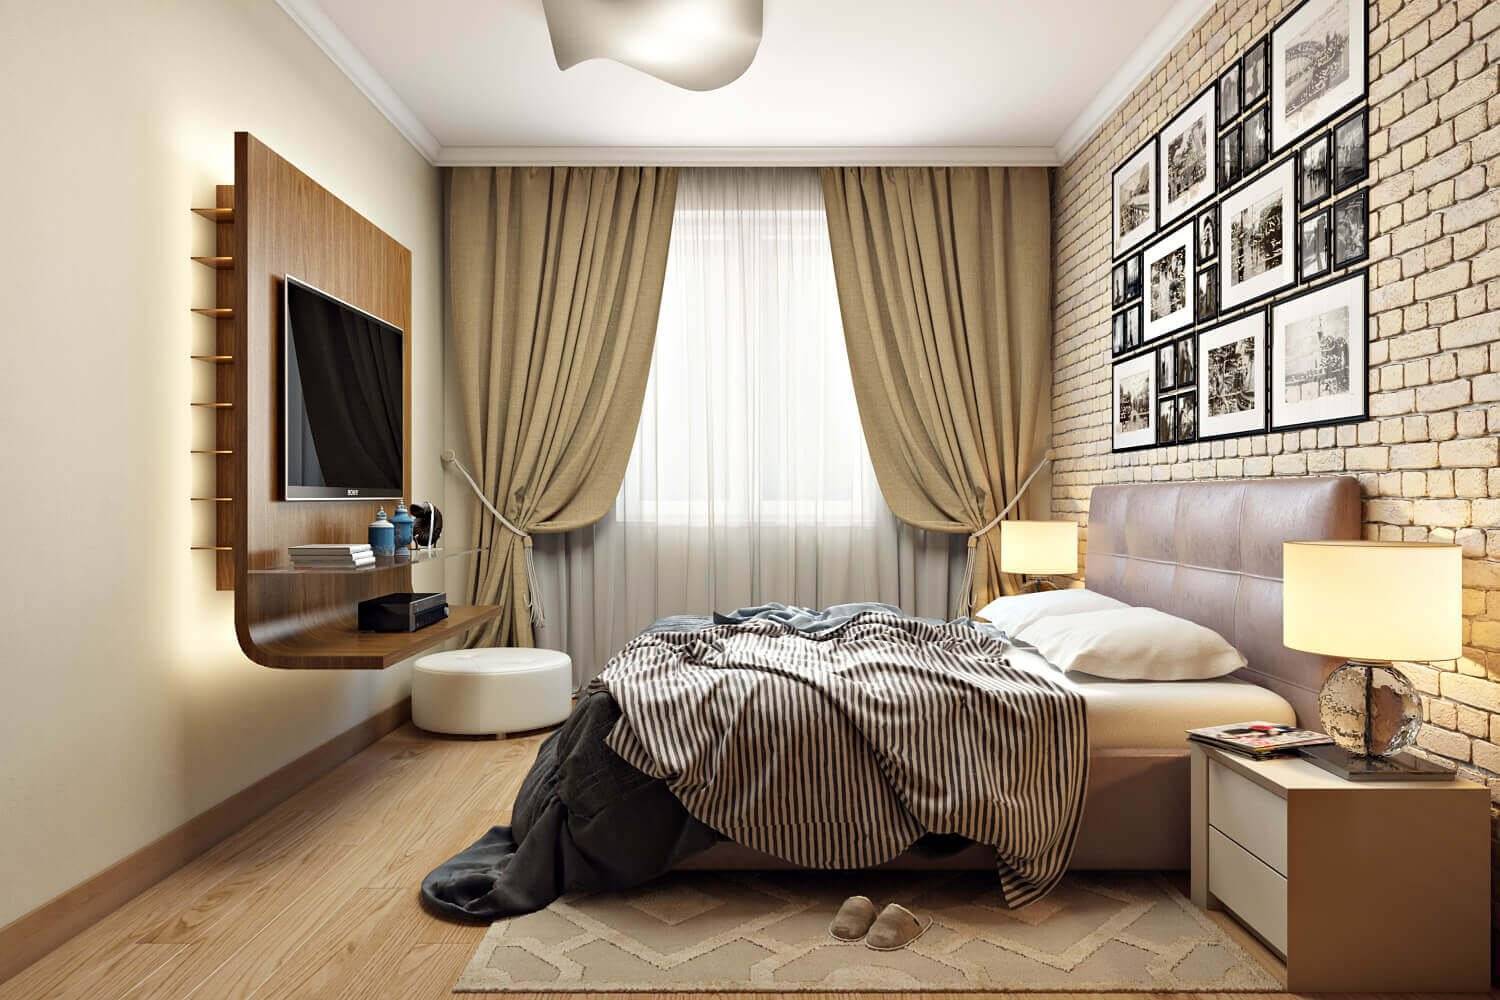 Дизайн прямоугольной спальни 15 кв м - строительный журнал palitrabazar.ru